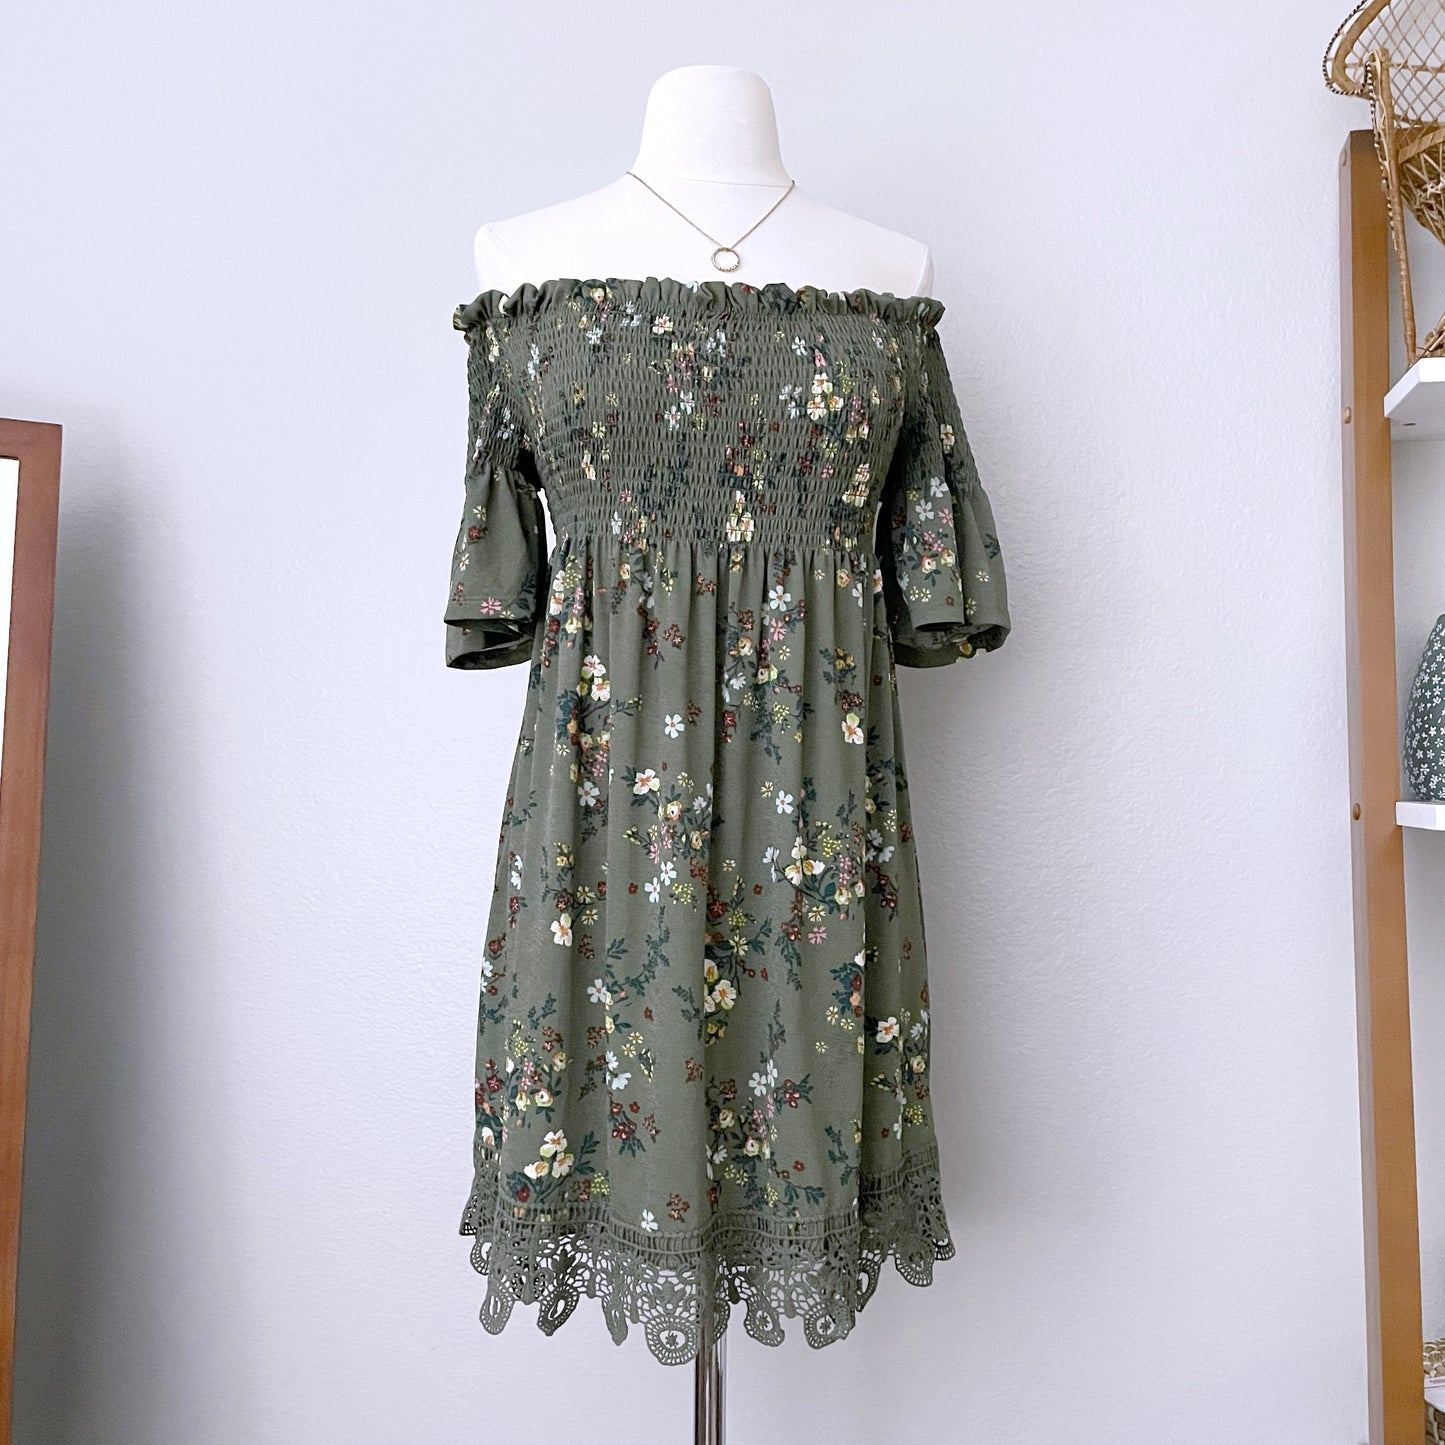 Olive Green Smocked Floral Dress (L)